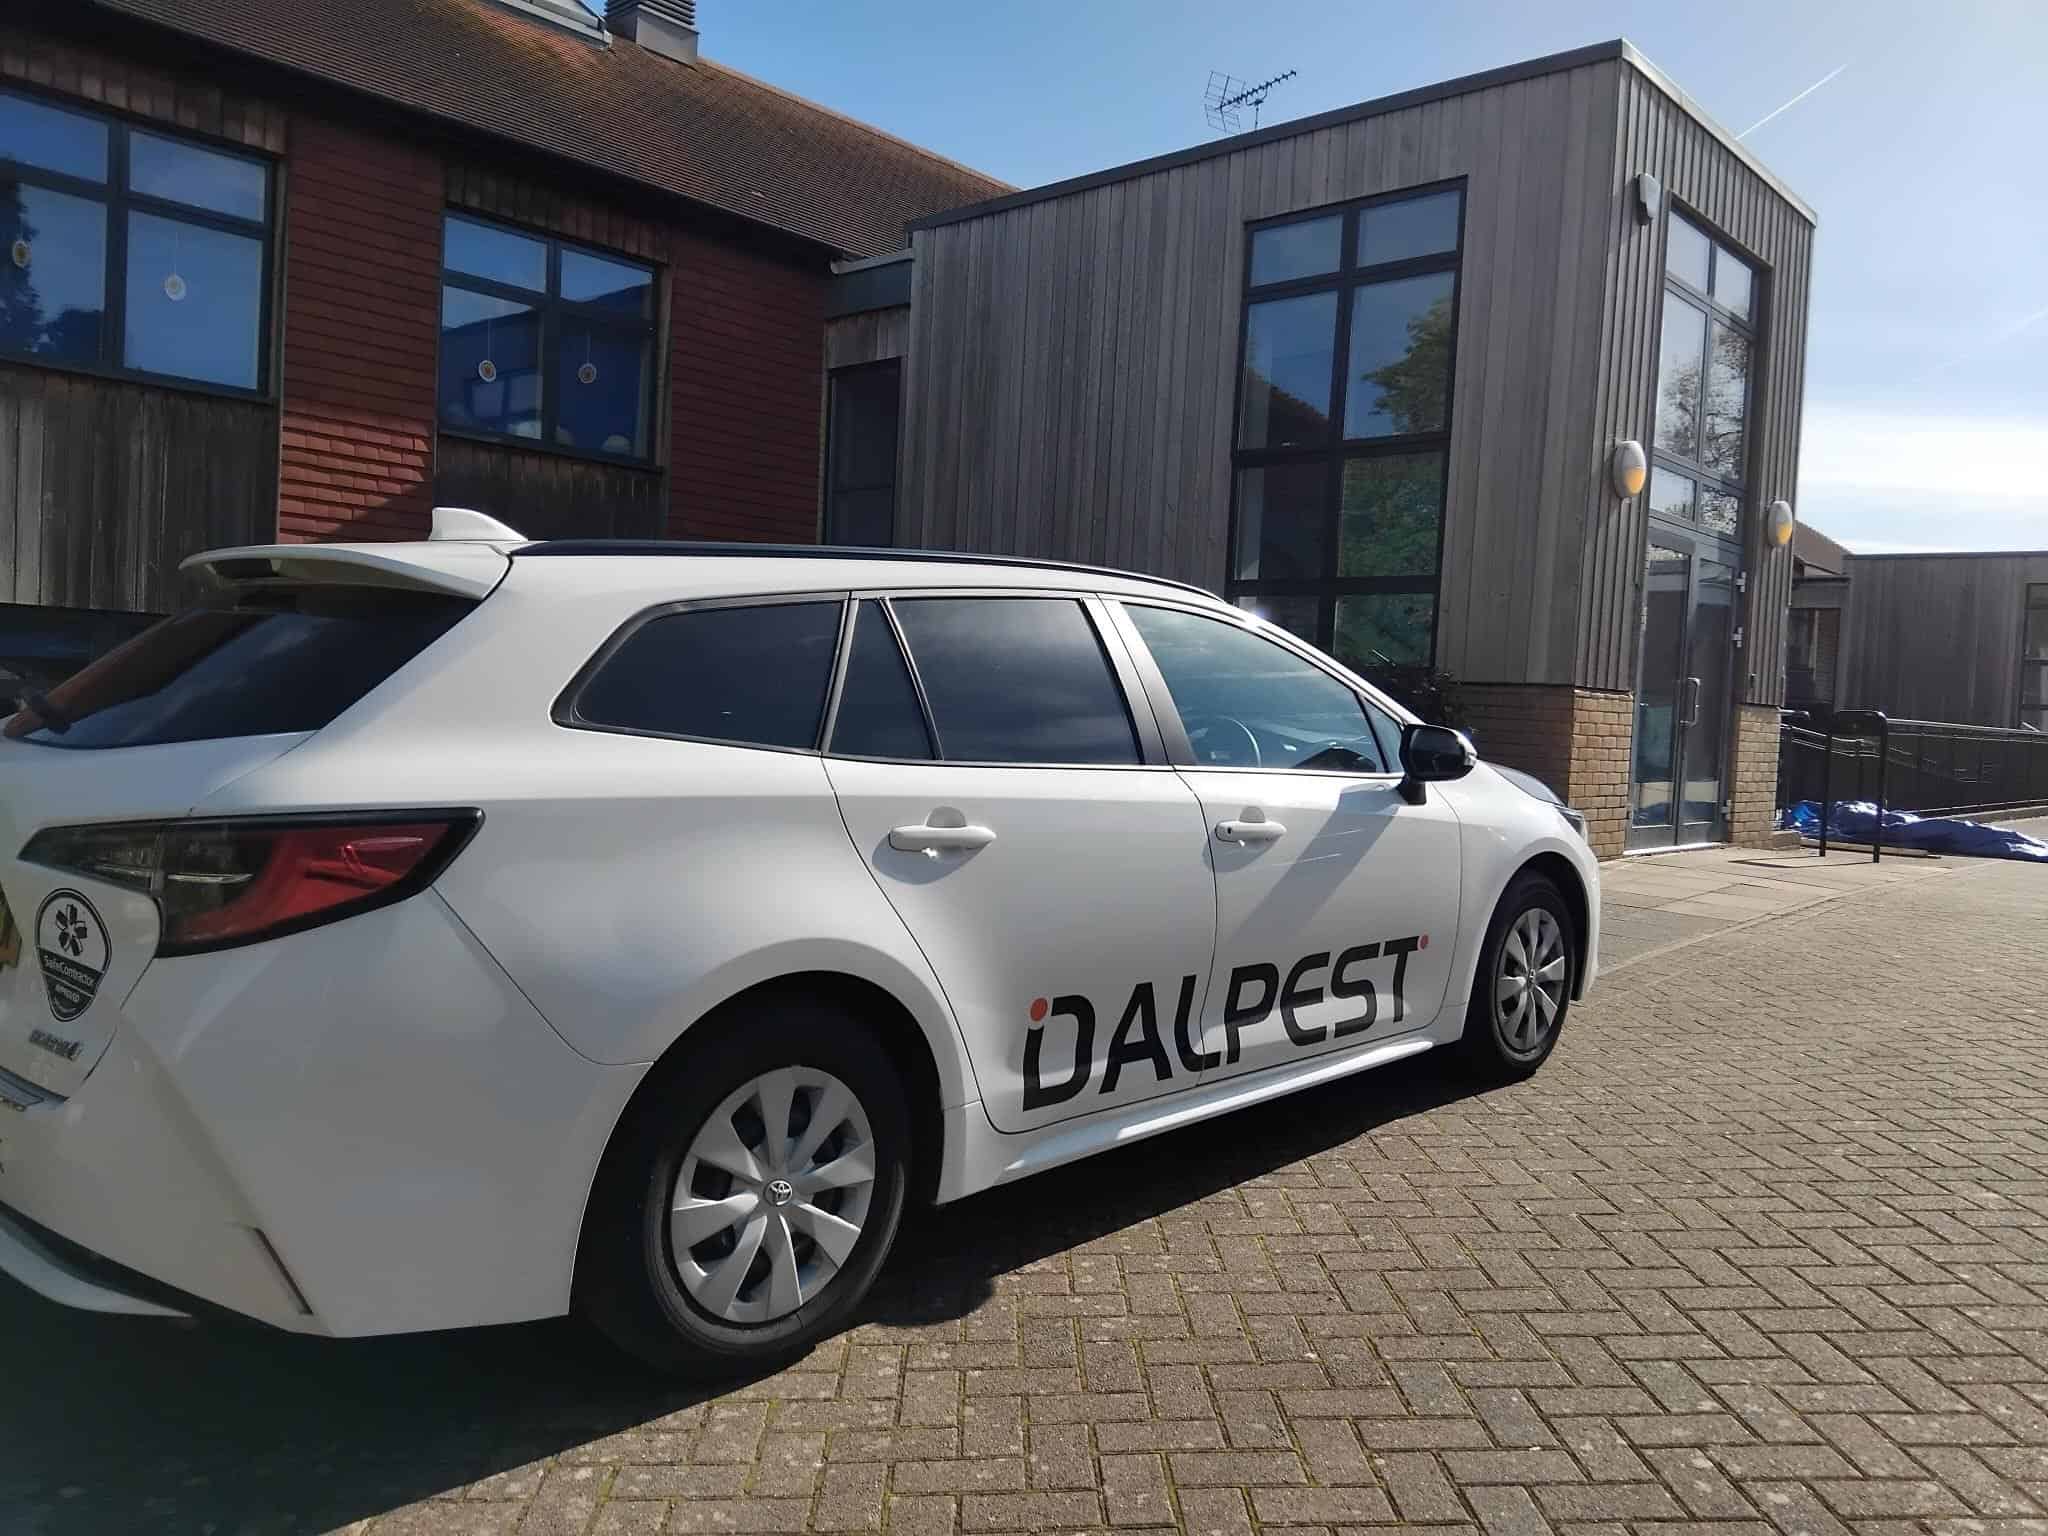 DALPEST Car at a school